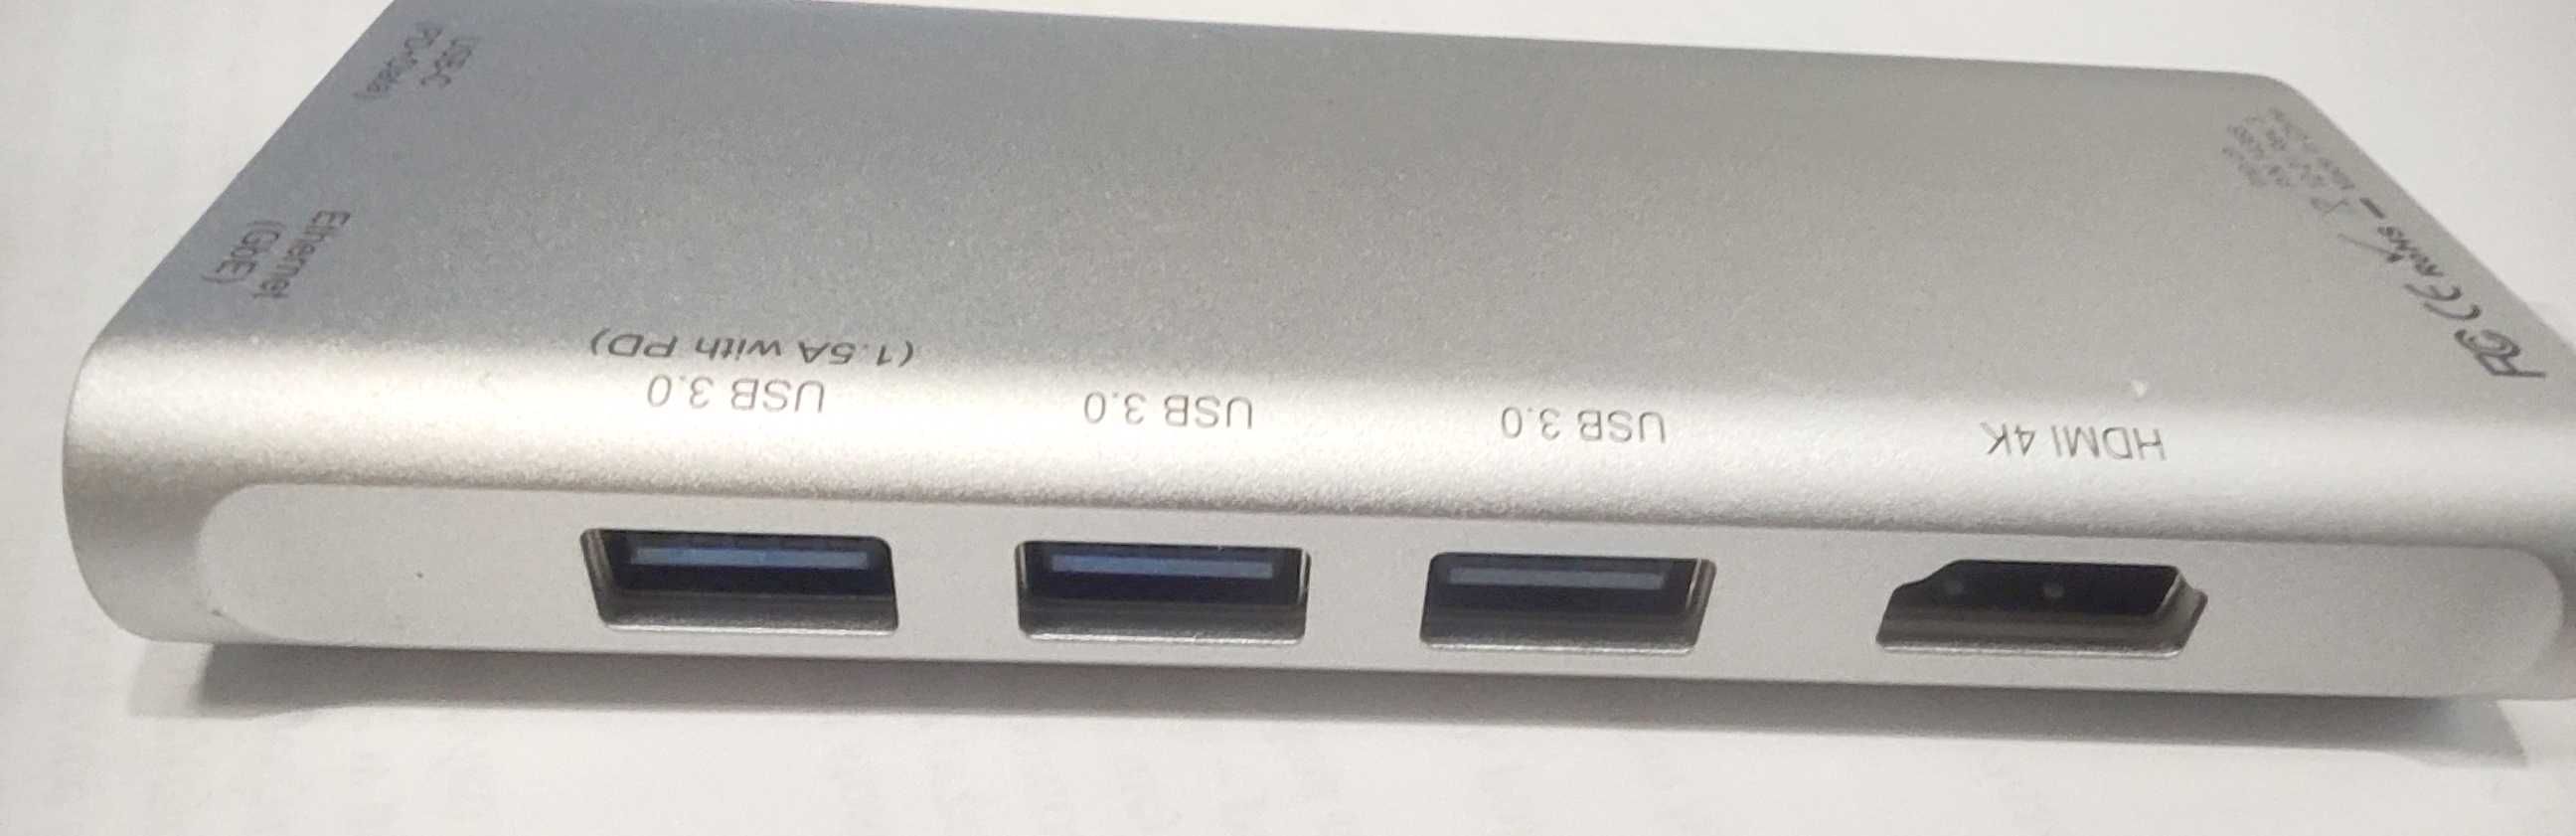 LMP mini dock 8w1 Apple stacja dokująca USB HDMI SD